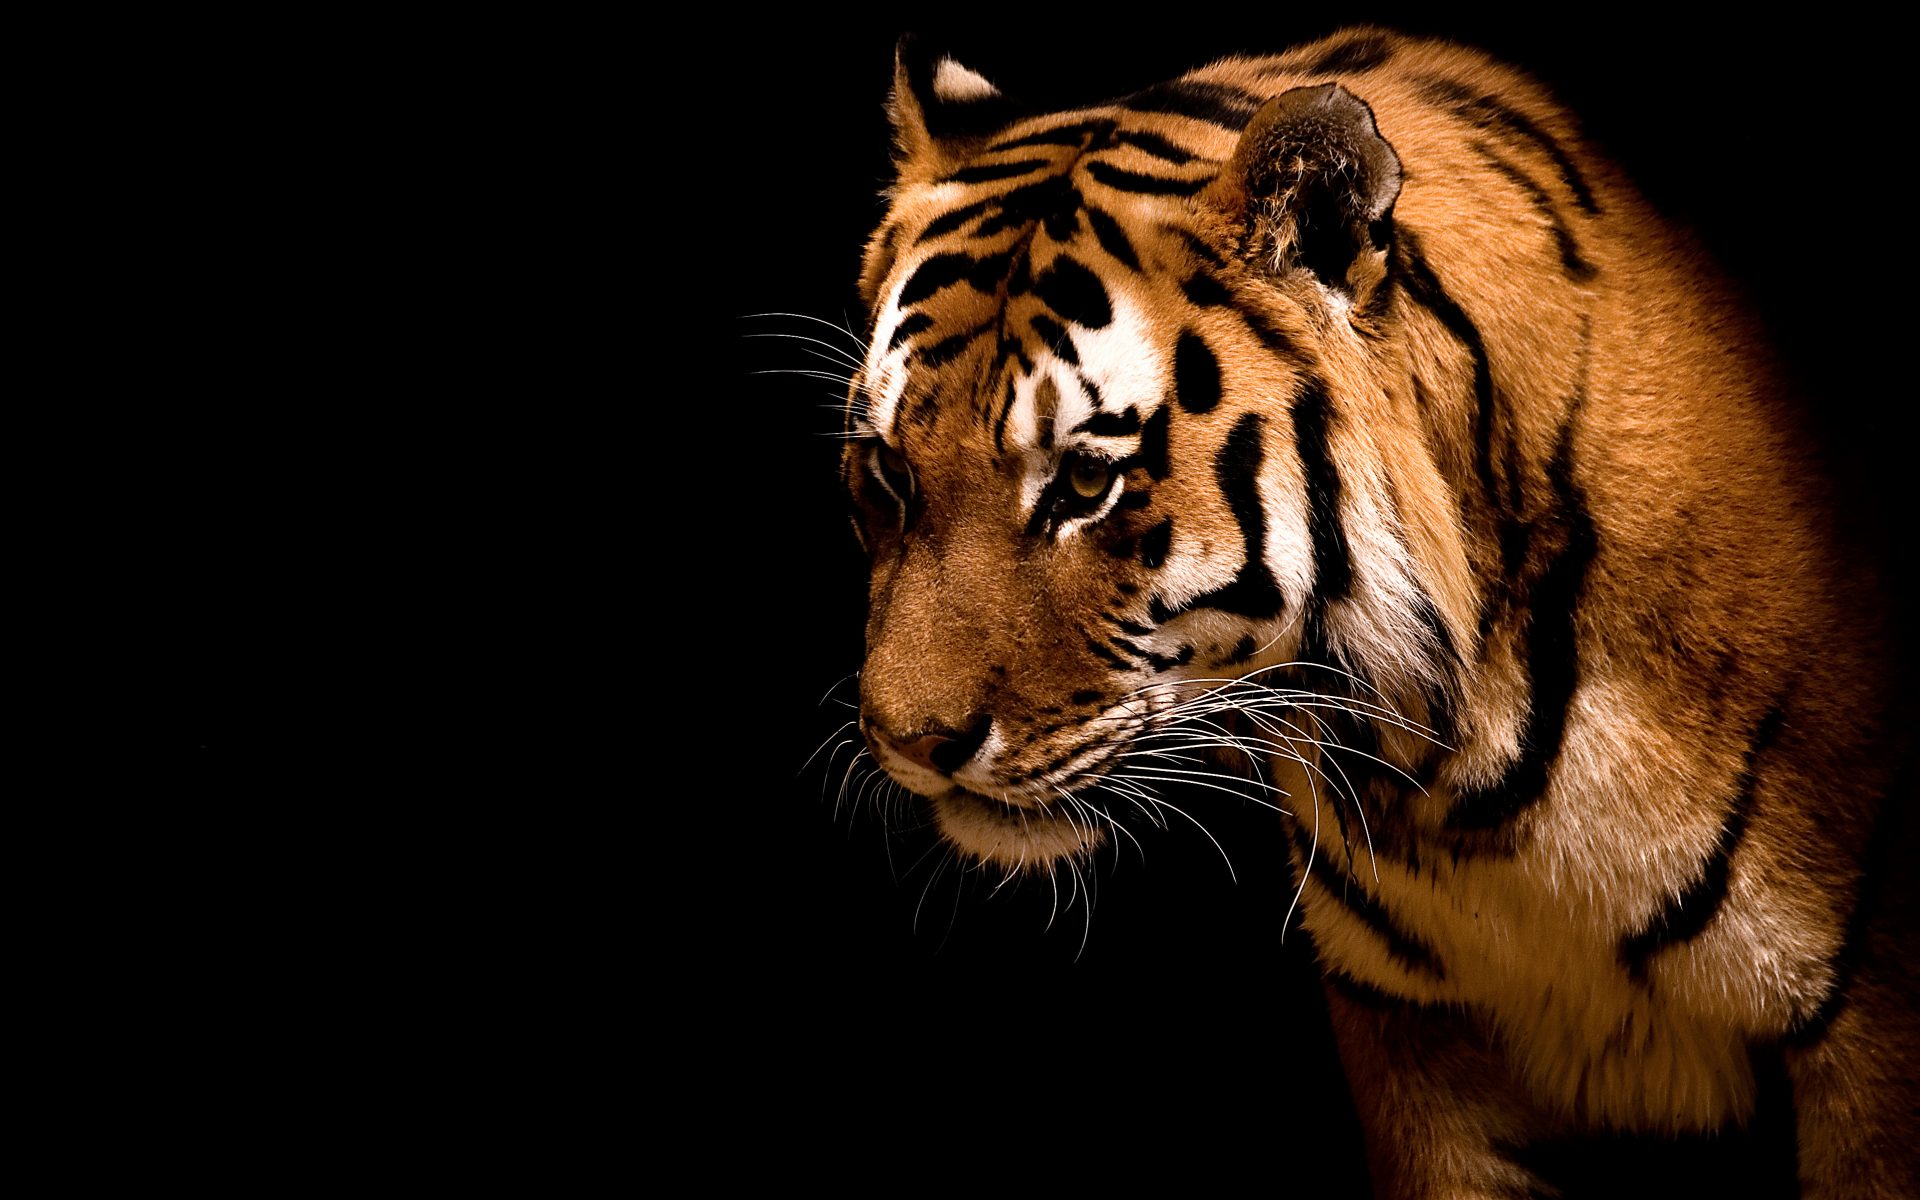 Bakgrunnsbilder Tigre Store kattedyr Dyr tiger